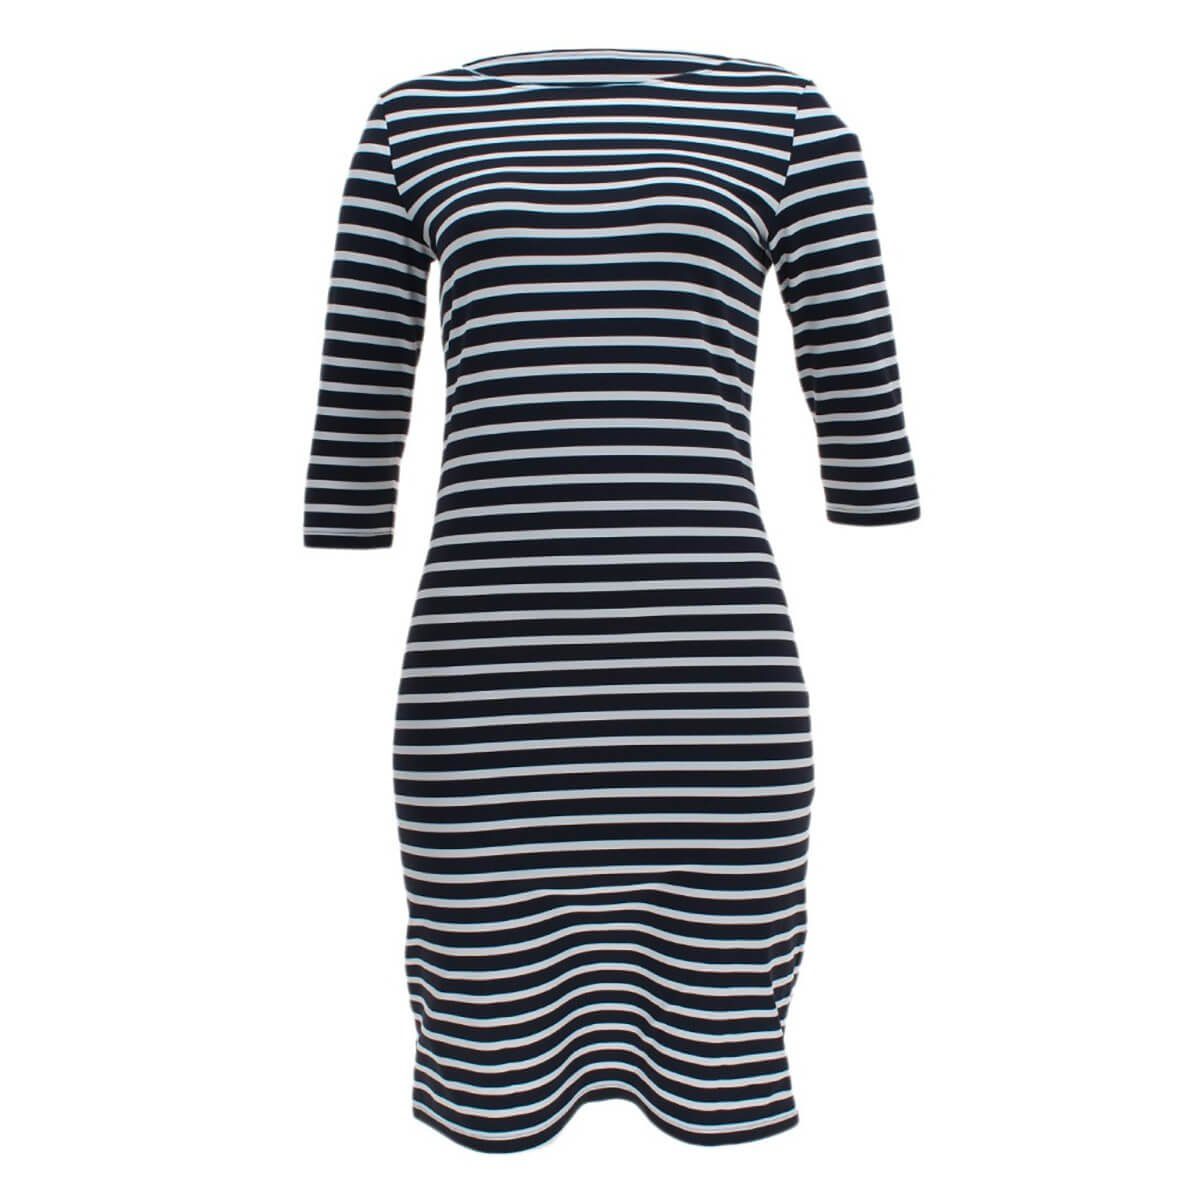 Saint James Shirtkleid 0742 Damen Kleid mit Streifen Sommershirtkleid Streifenkleid Propriano III Blau-Weiß(6T)